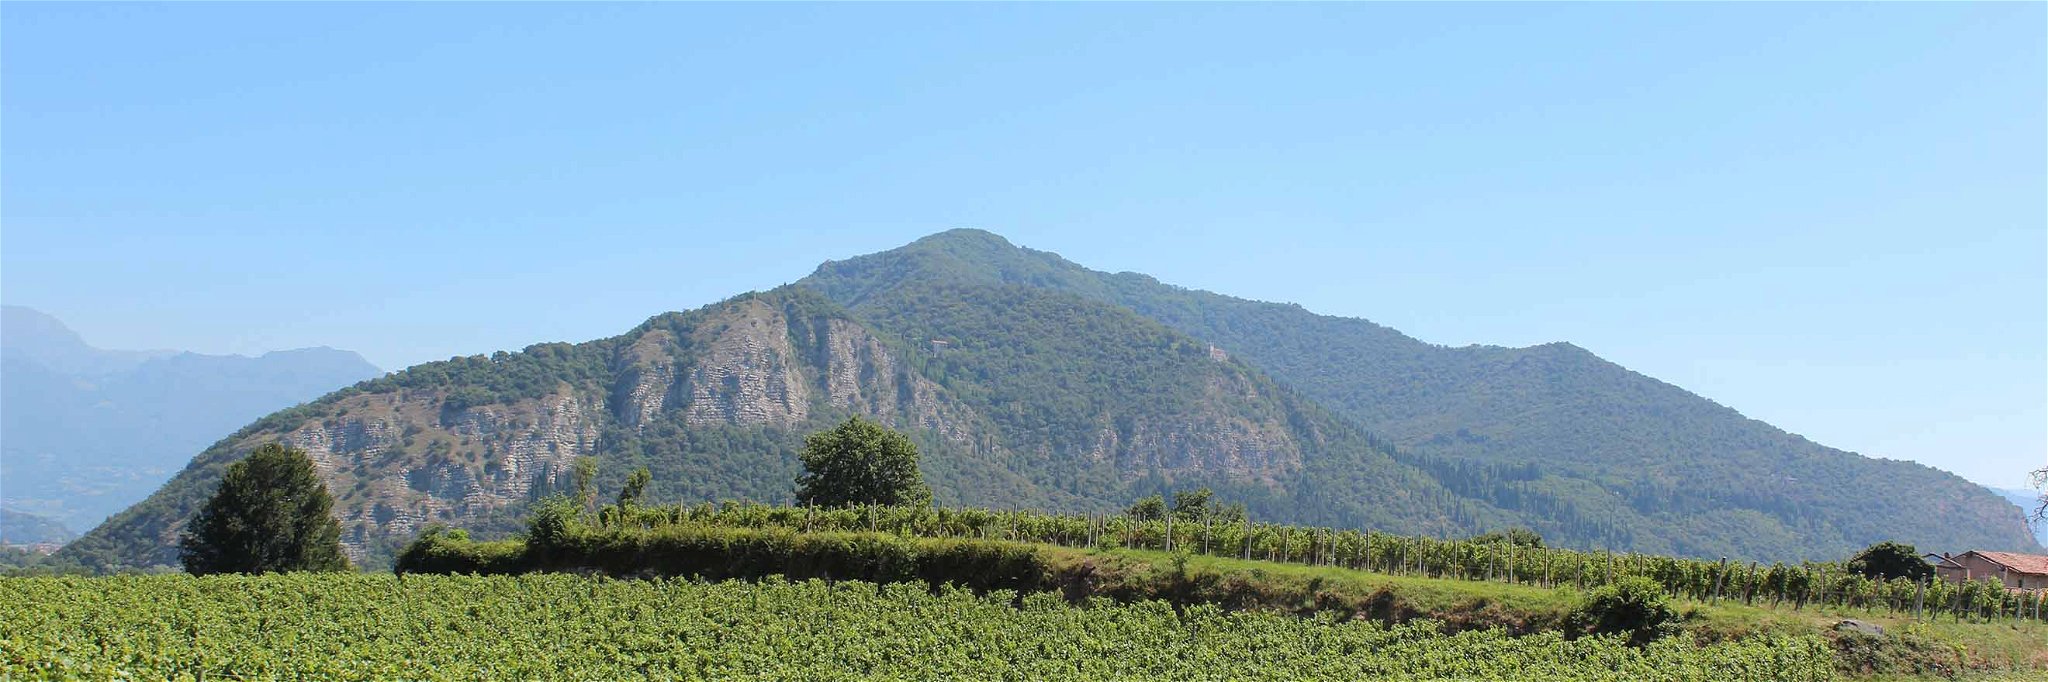 Typische Weingärten der Franciacorta